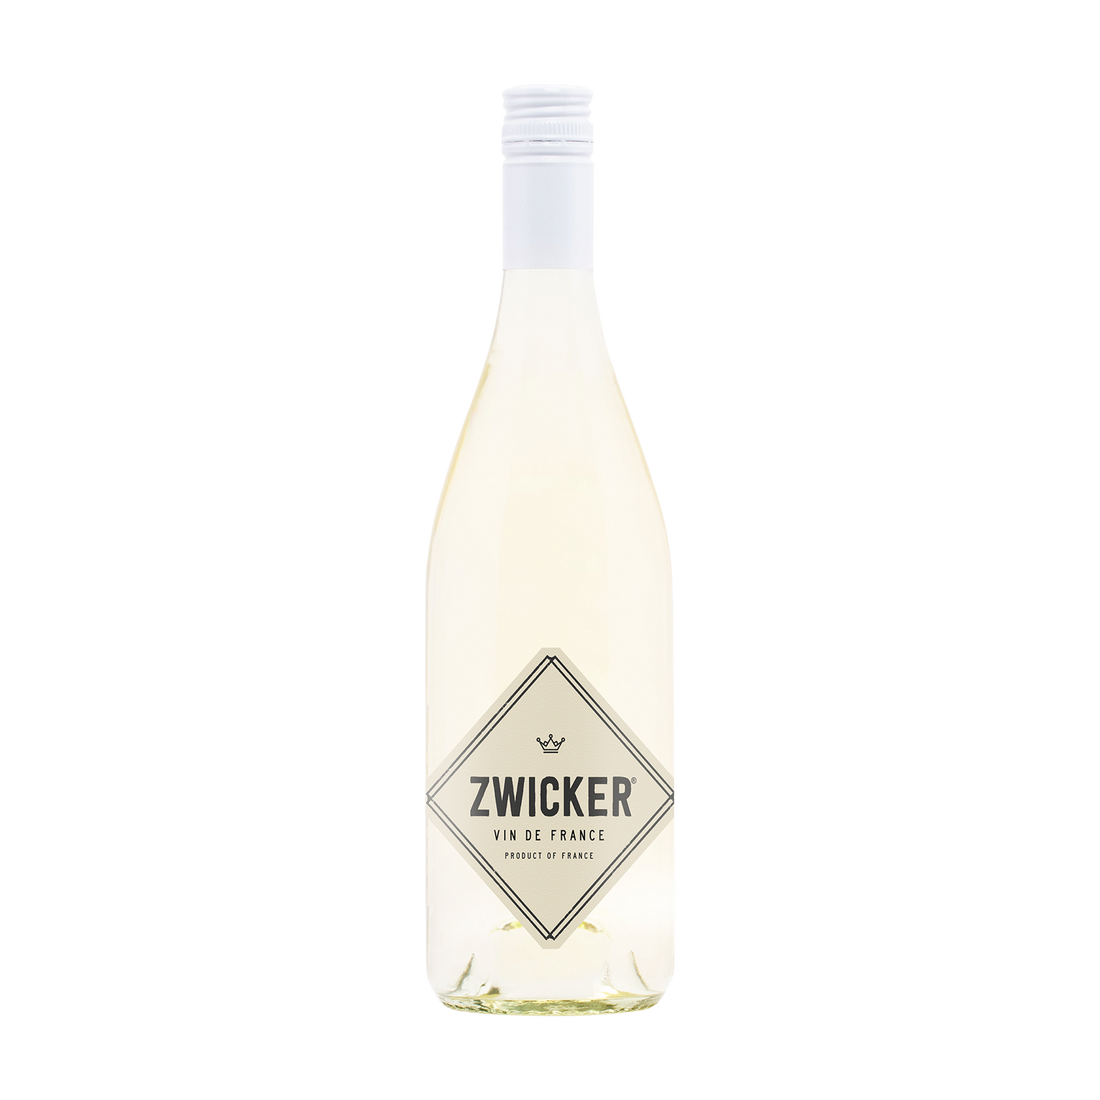 2021 Zwicker® White Wine Blend